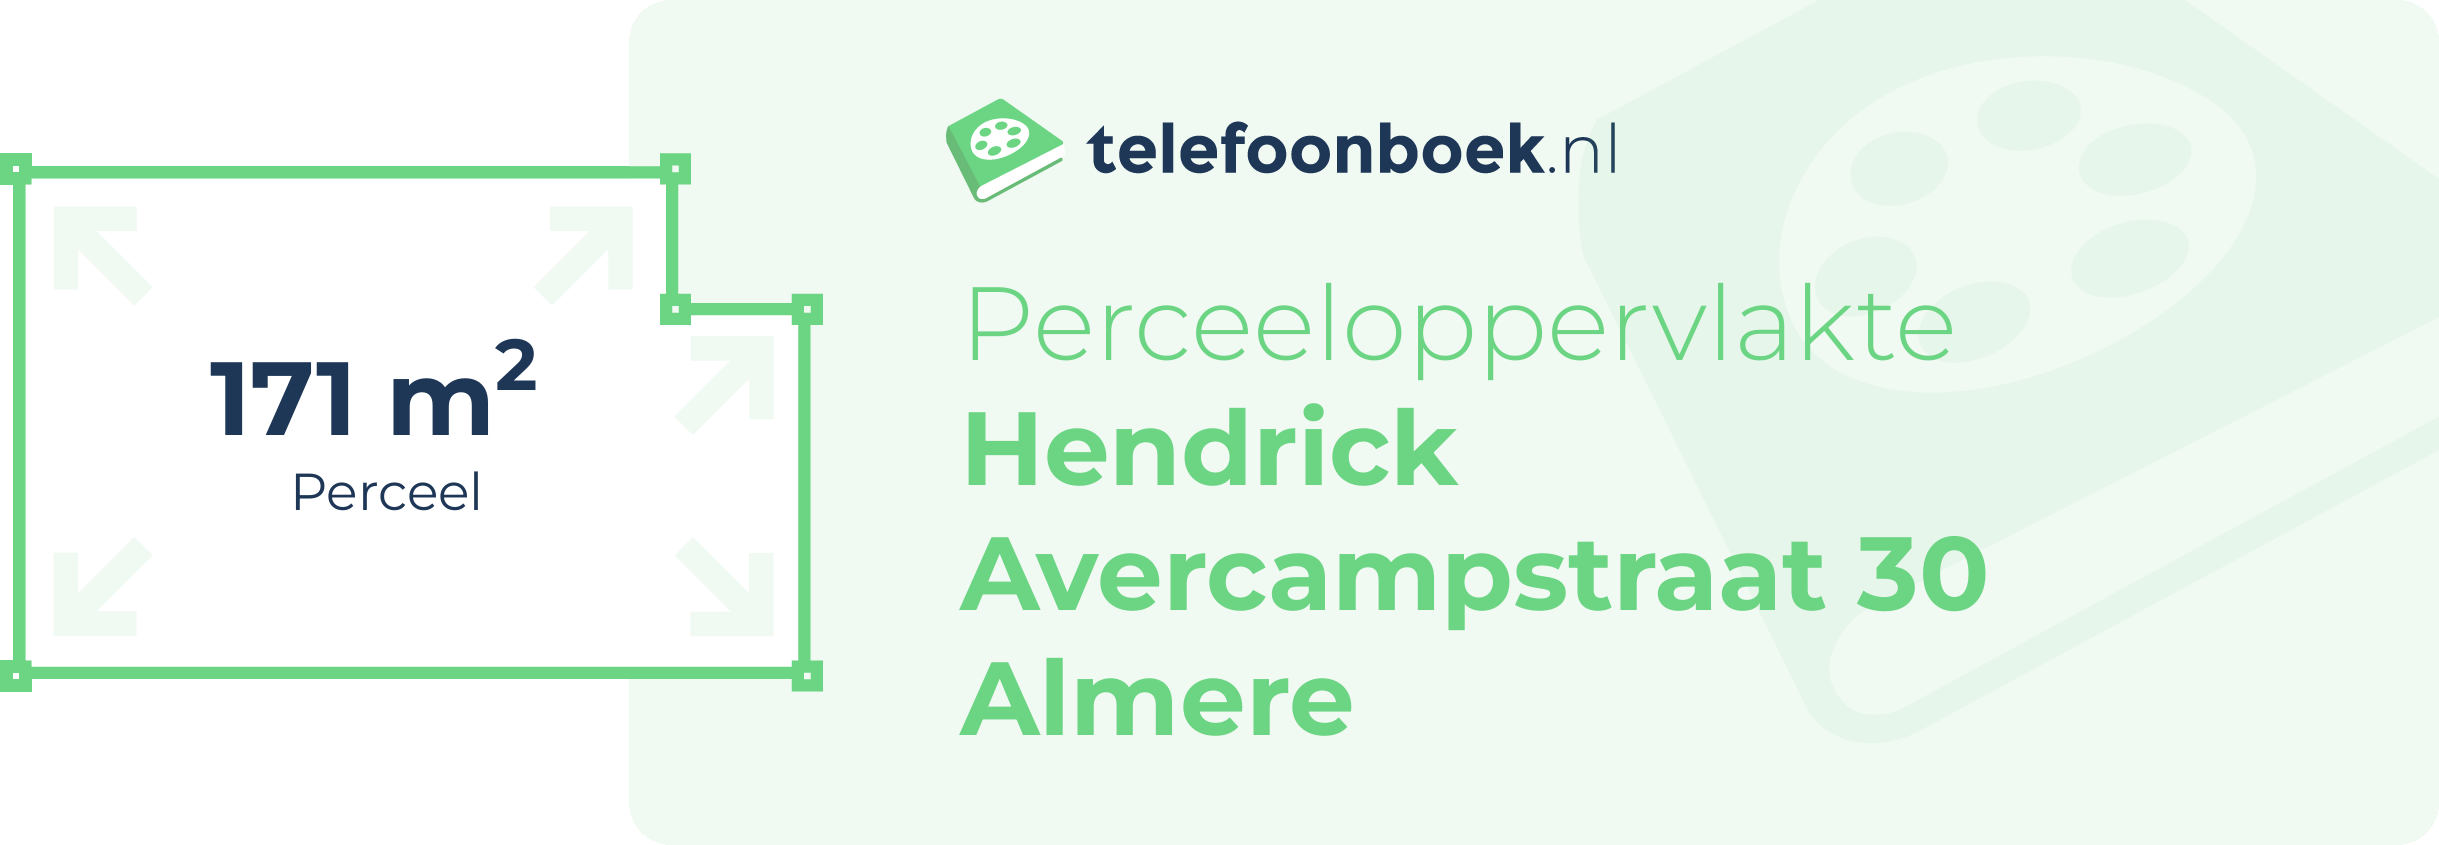 Perceeloppervlakte Hendrick Avercampstraat 30 Almere